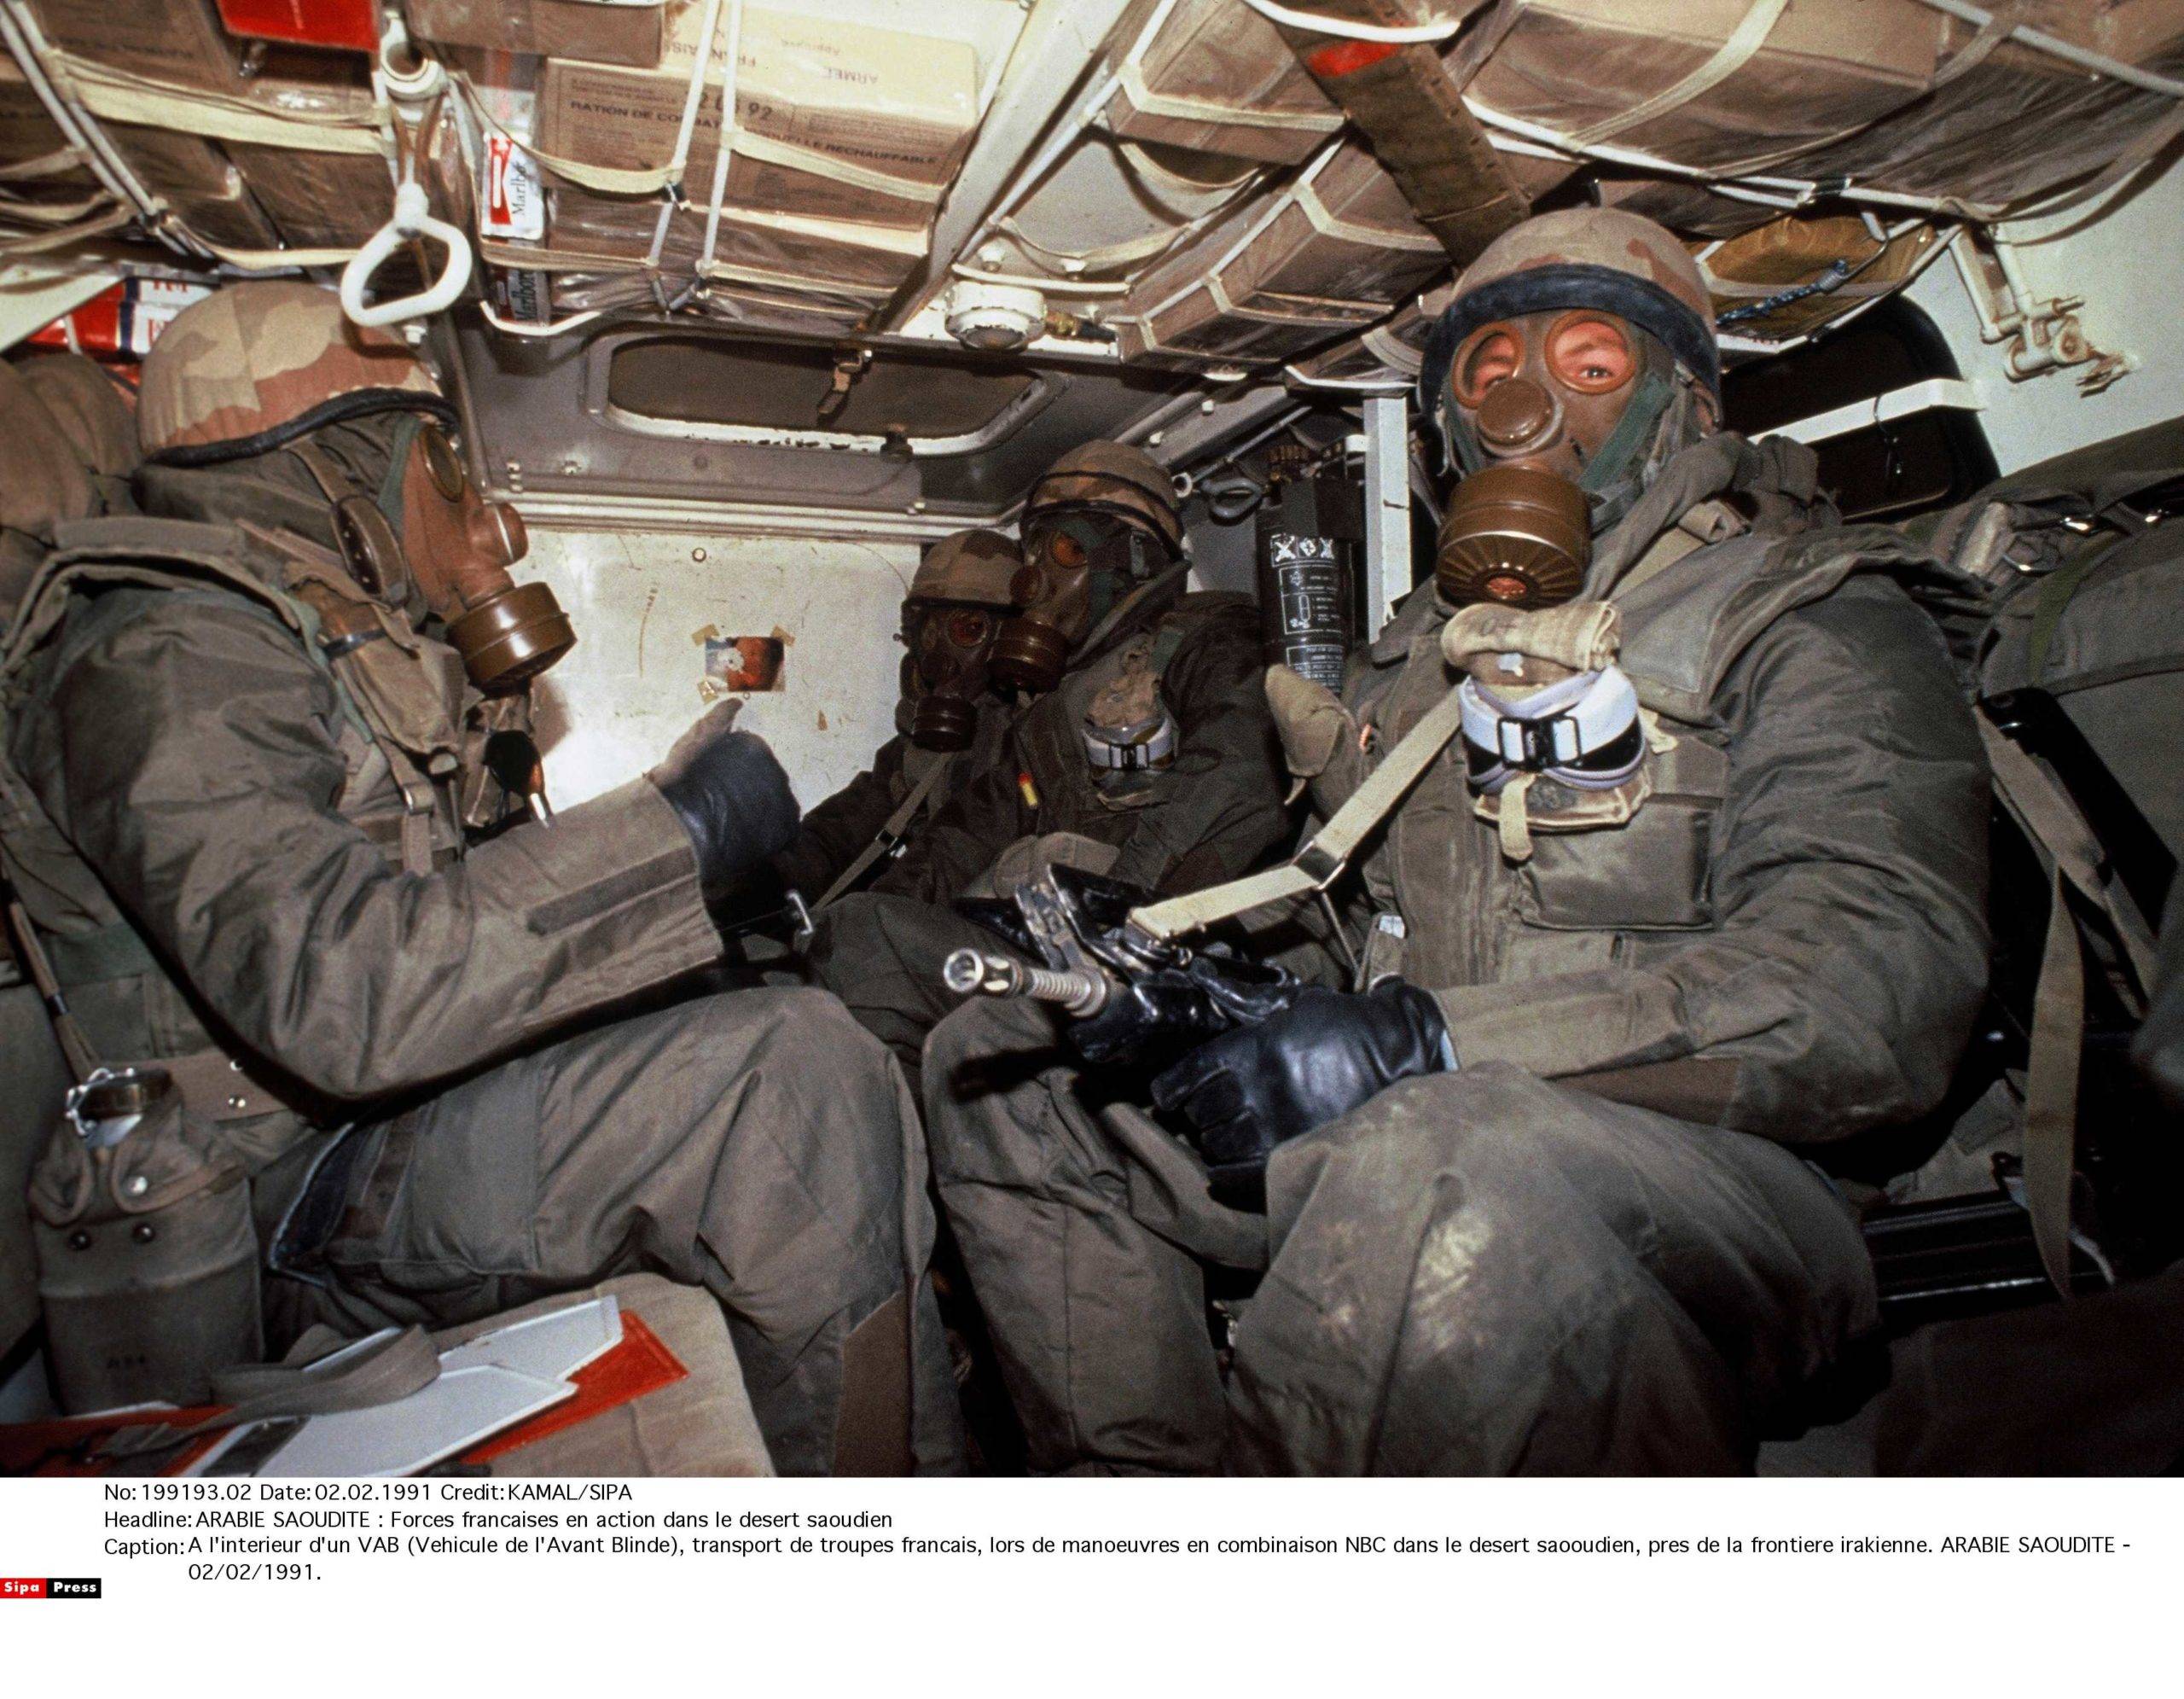 A l'interieur d'un VAB (Vehicule de l'Avant Blinde), transport de troupes francais, lors de manoeuvres en combinaison NBC dans le desert saooudien, pres de la frontiere irakienne. ARABIE SAOUDITE - 02/02/1991.